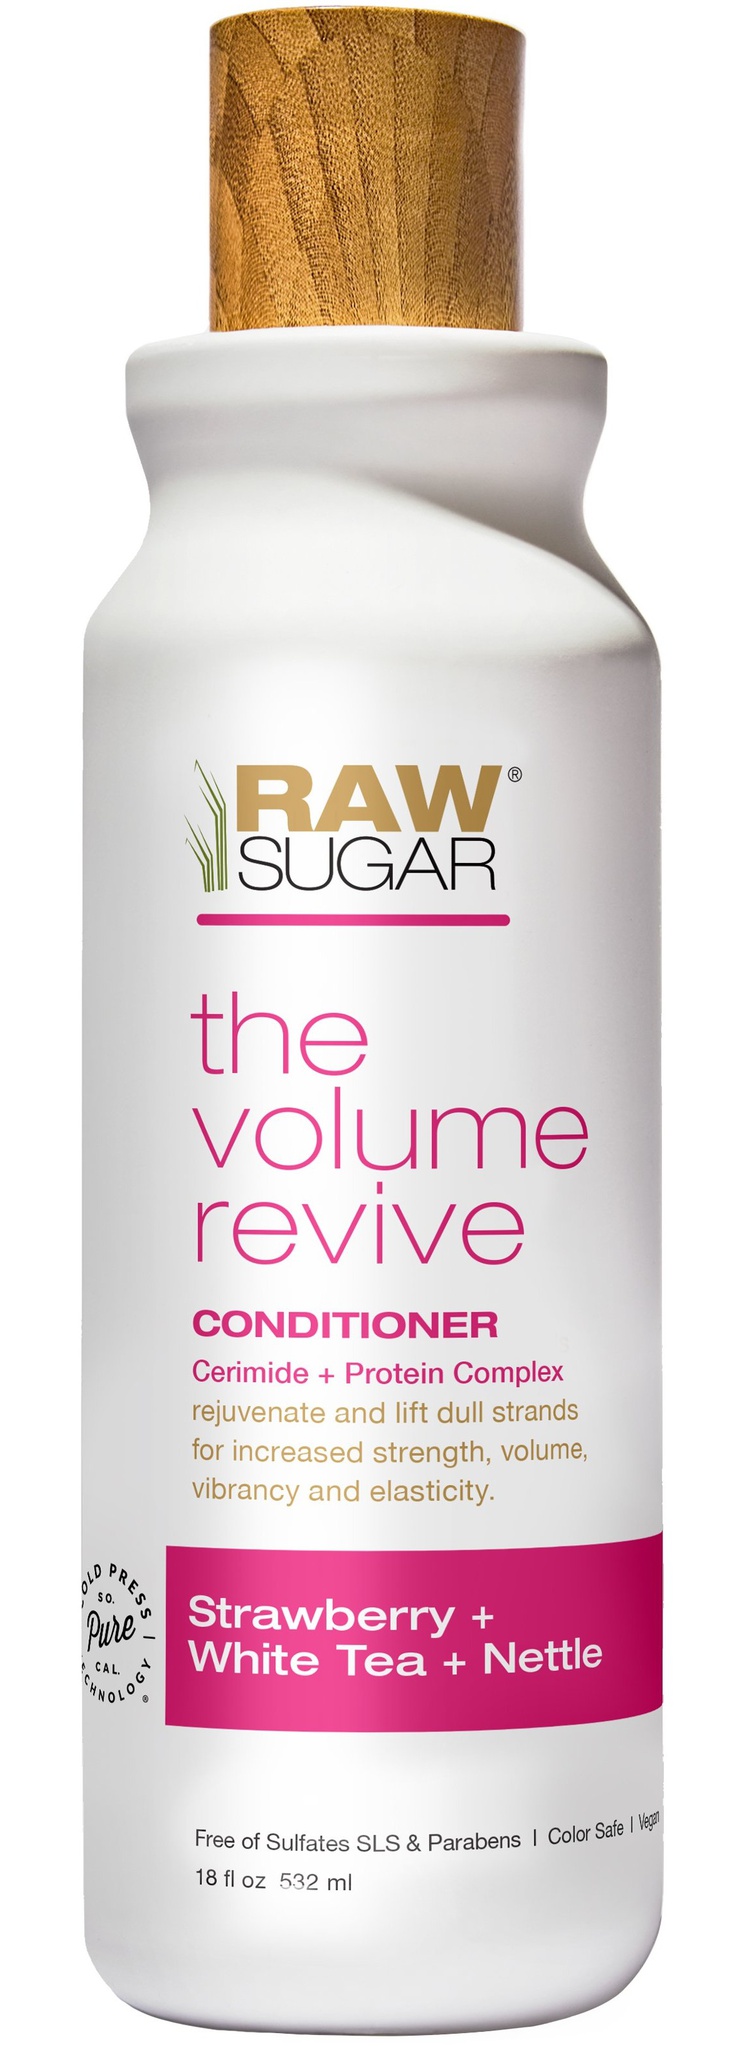 Raw Sugar The Volume Revive Conditioner Strawberry + White Tea + Nettle